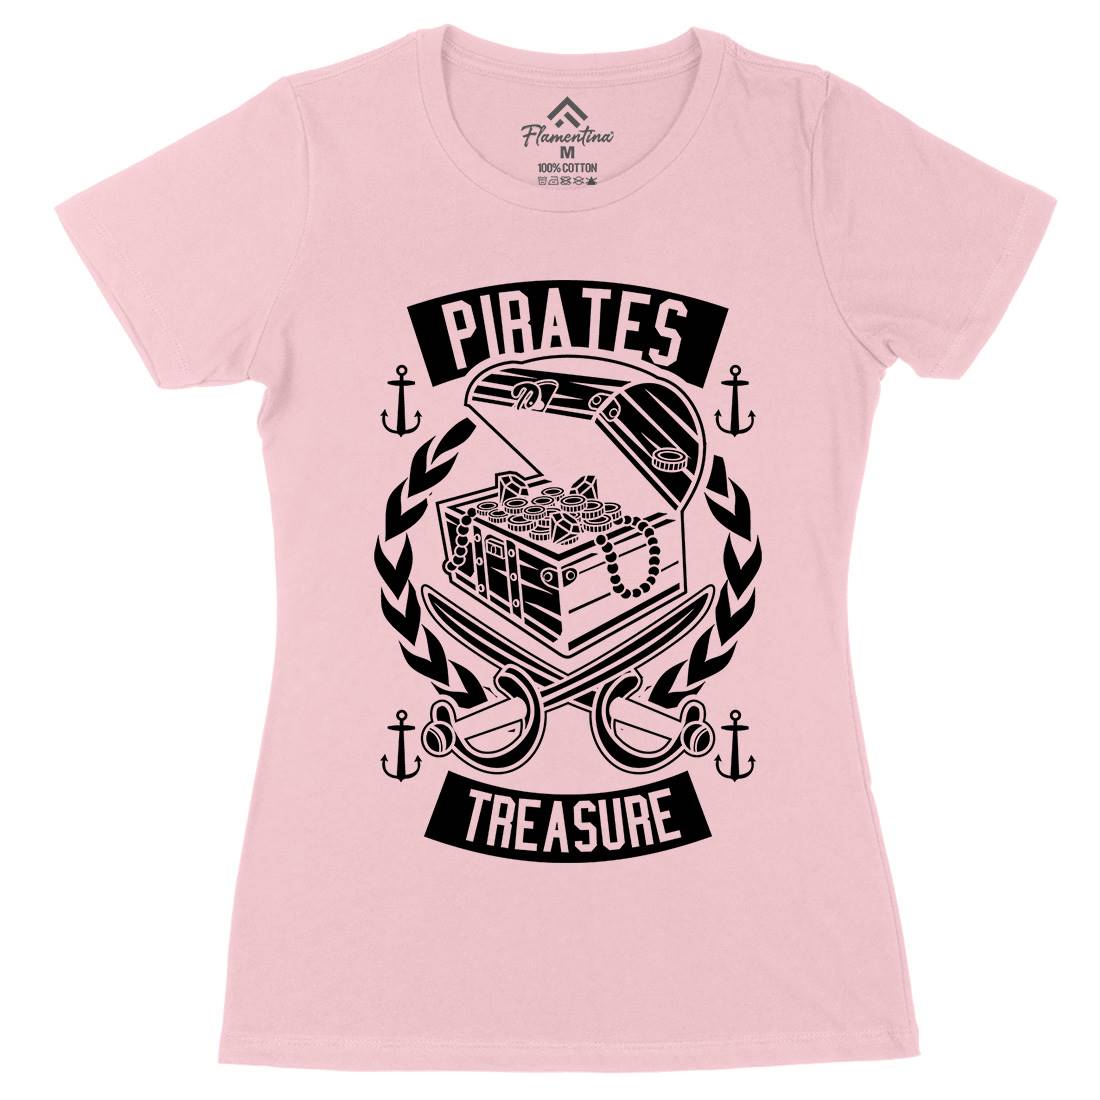 Pirates Treasure Womens Organic Crew Neck T-Shirt Navy B600